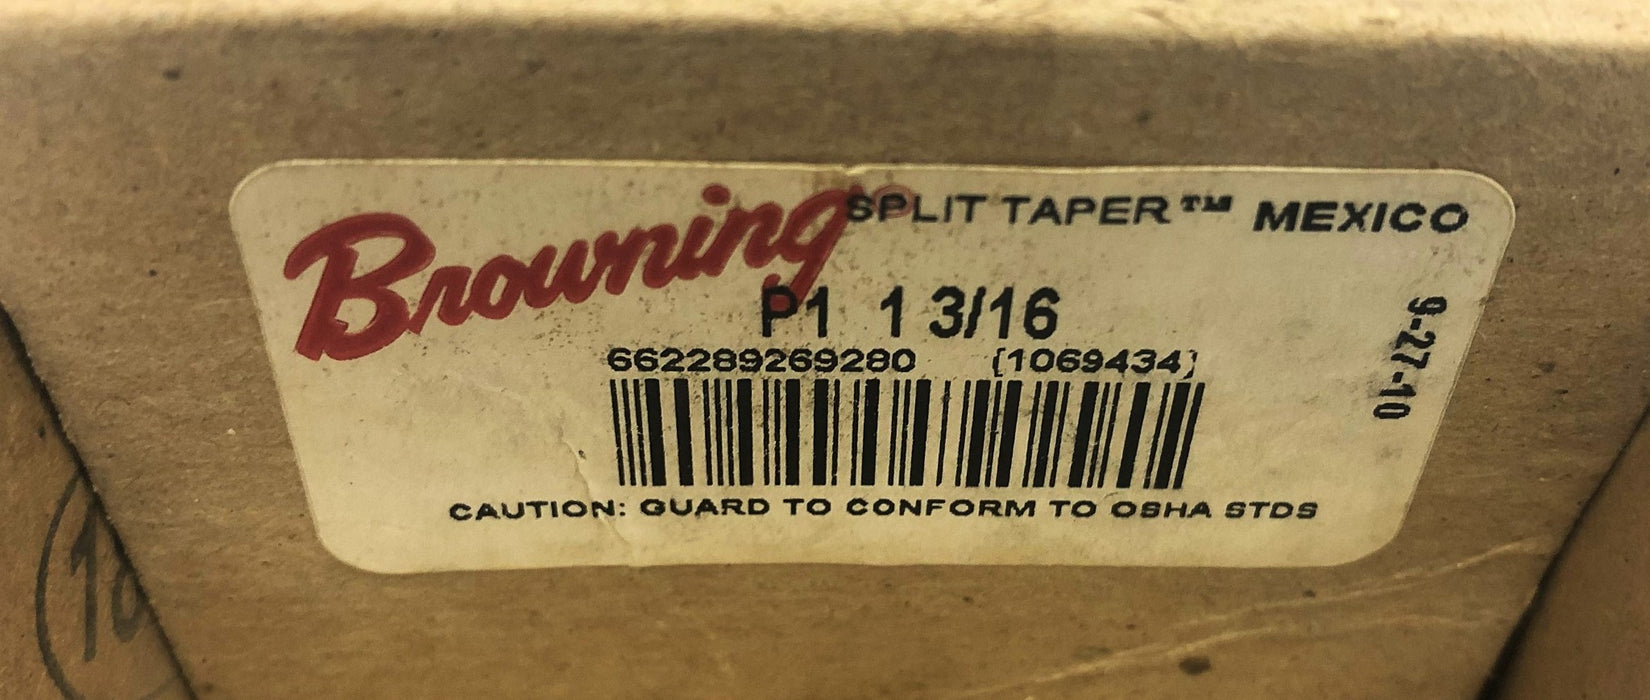 Browning Split Taper Bushing P1-1-3/16 [Lot of 2] NOS